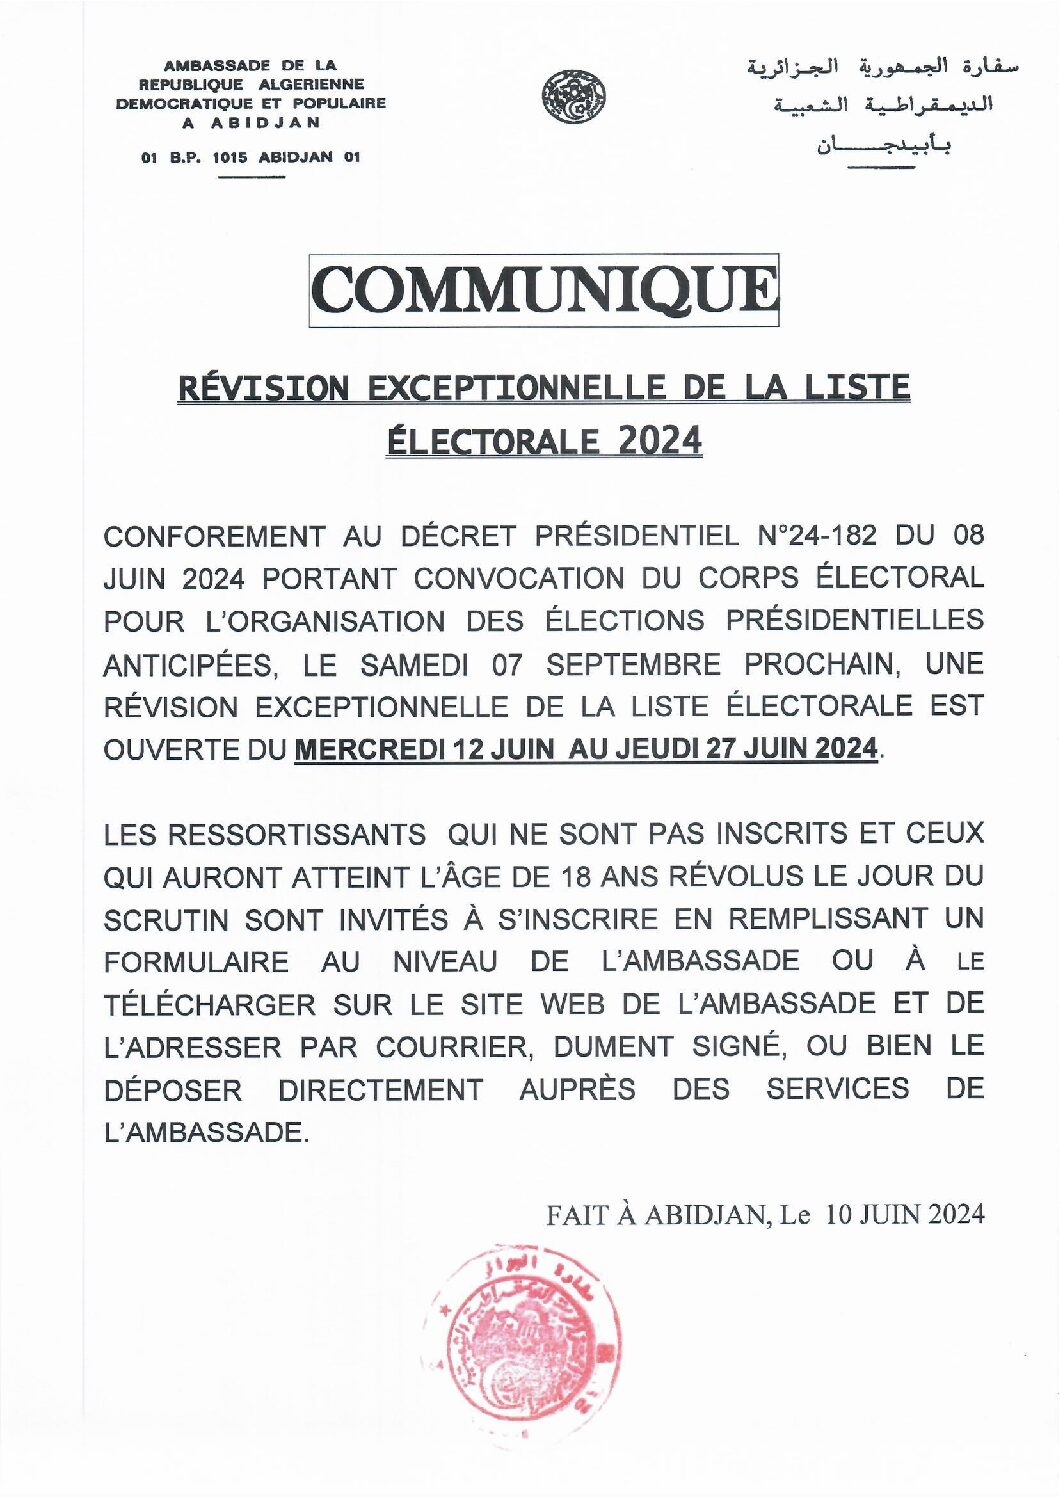 Communique révision exceptionnelle liste électorale 2024